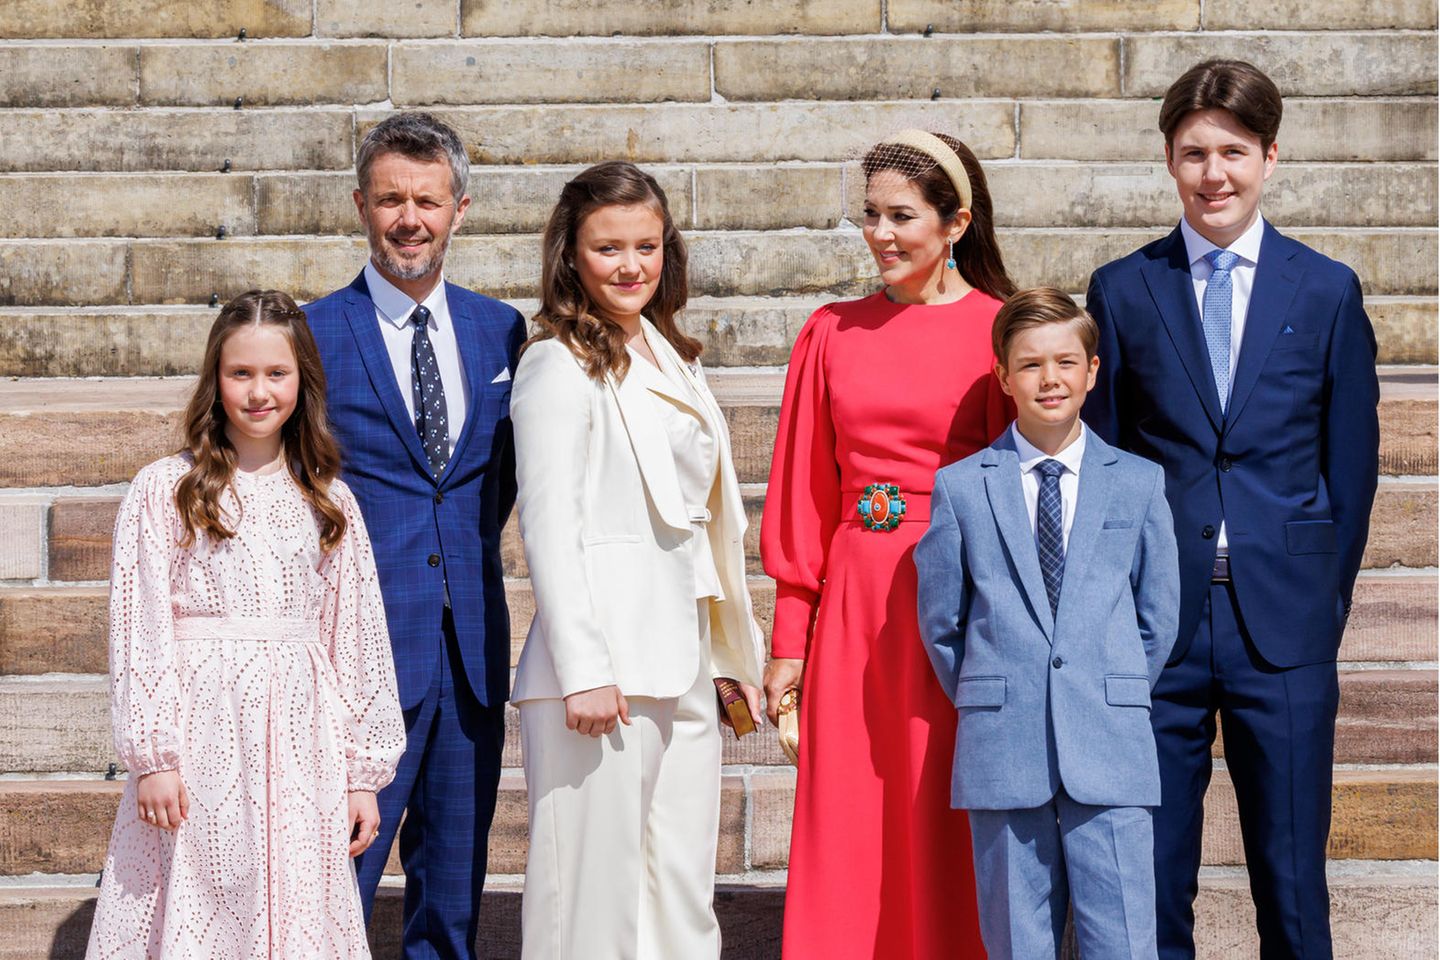 Prinzessin Josephine, Prinz Frederik, Prinzessin Isabella, Prinzessin Mary, Prinz Vincent und Prinz Christian.